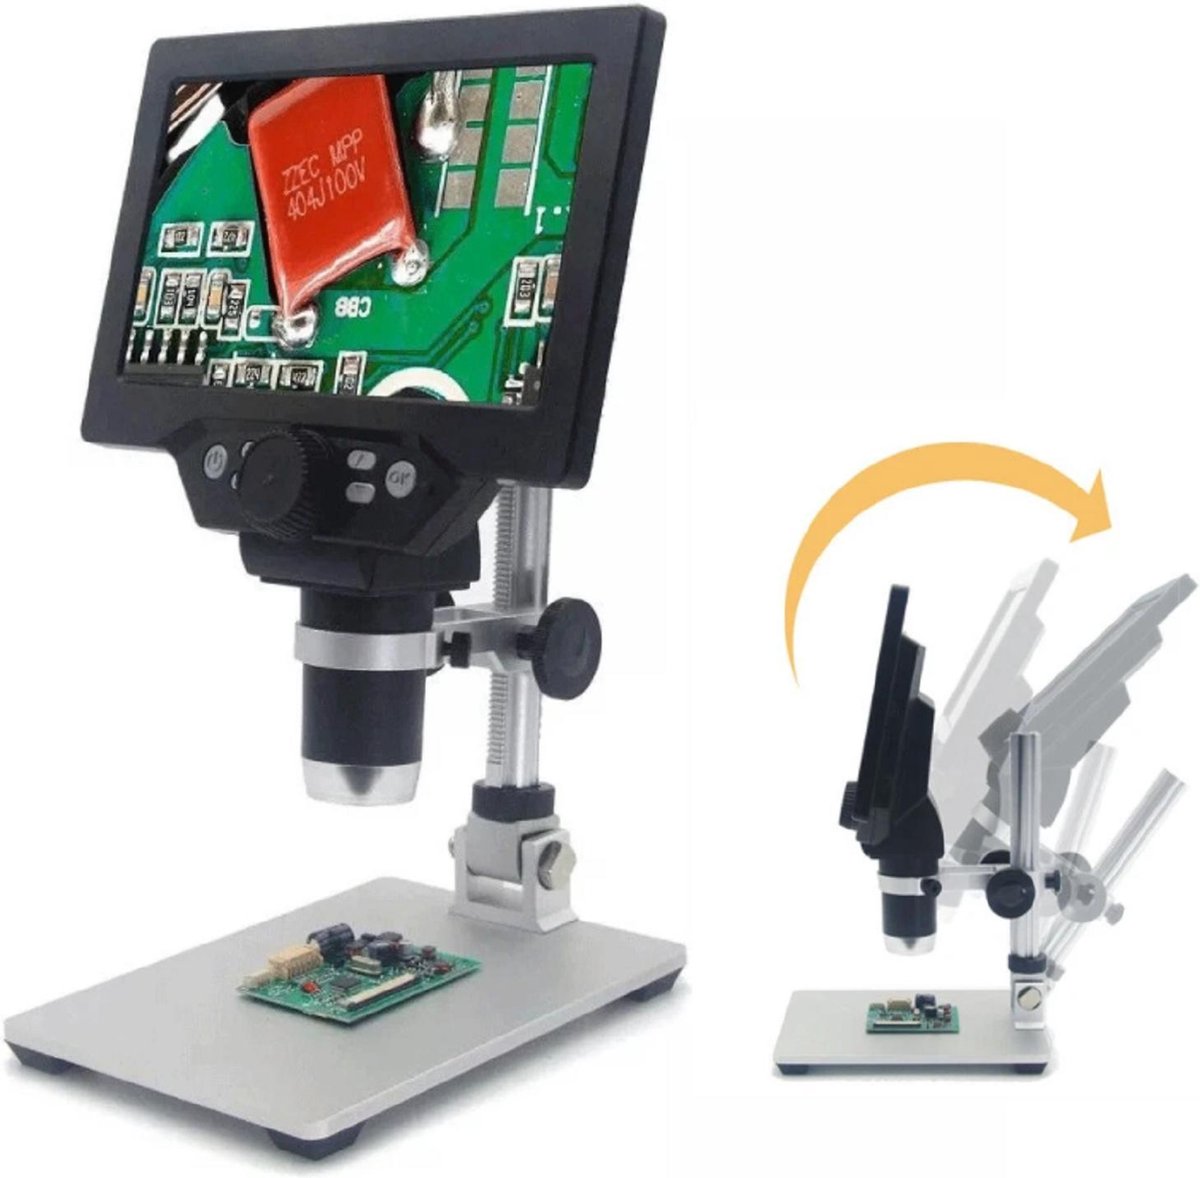 Digitale microscoop 12MP LCD display